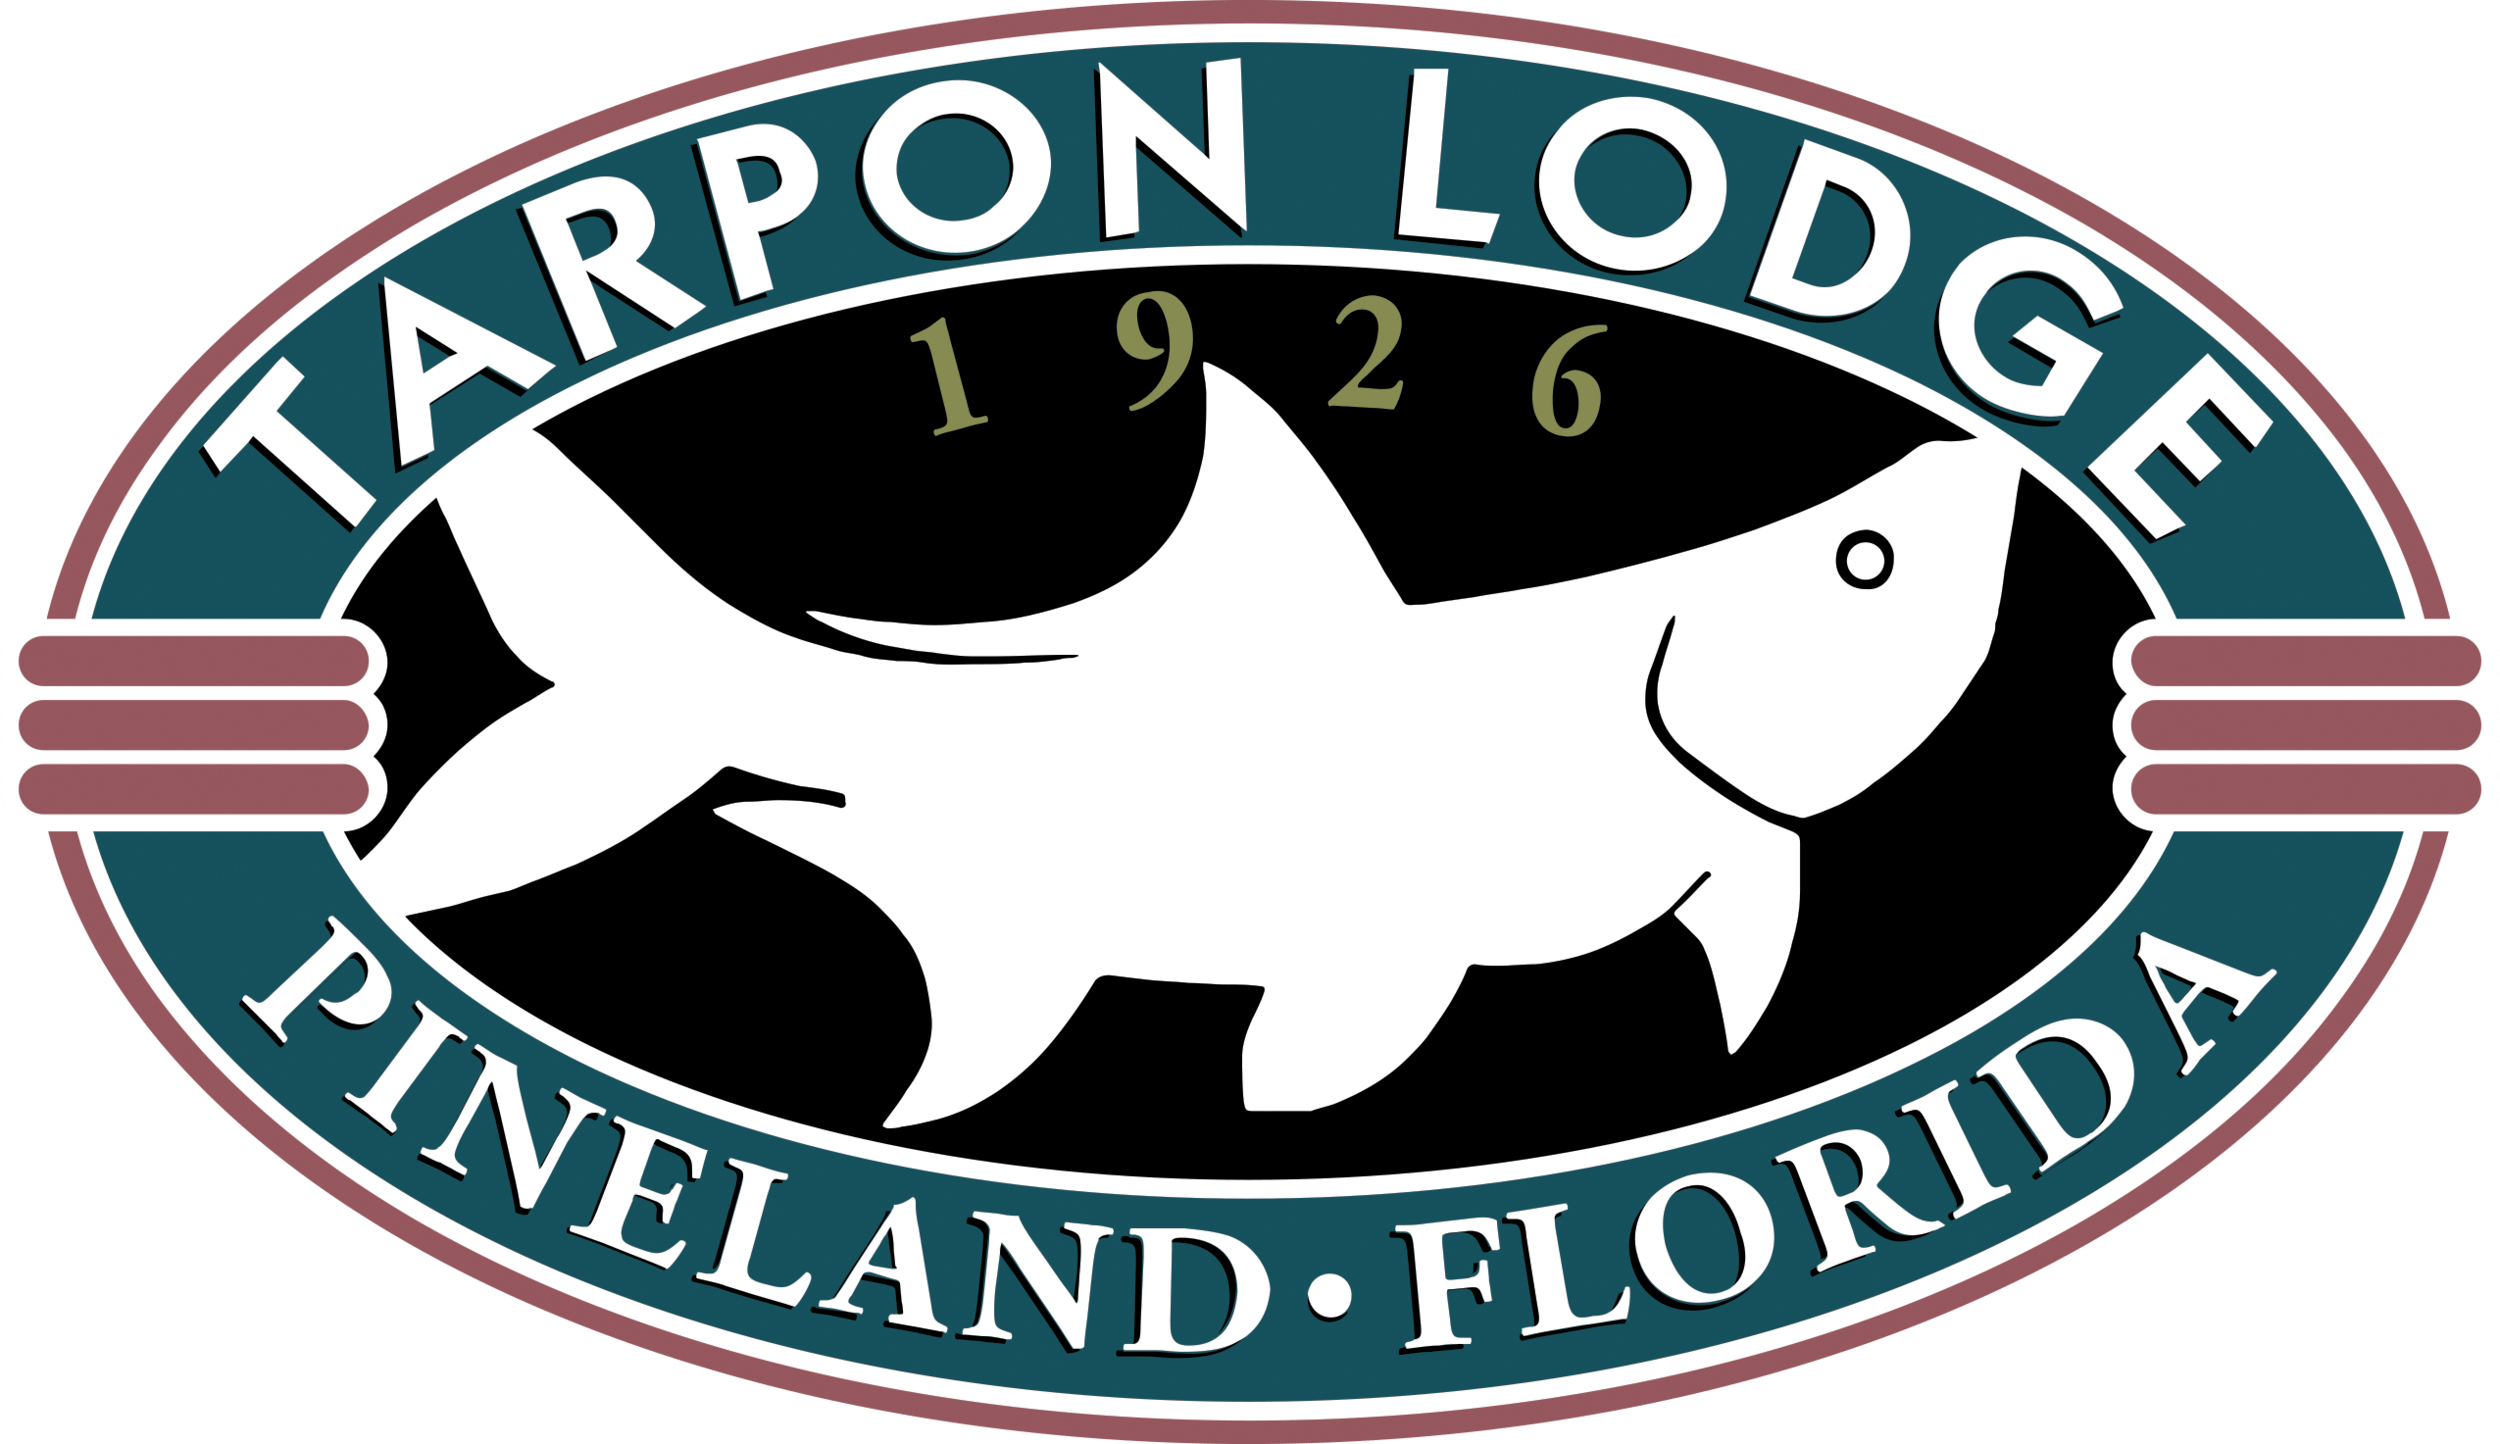 Tarpon Logo - logo-tarpon-lodge-rgb - Living Local